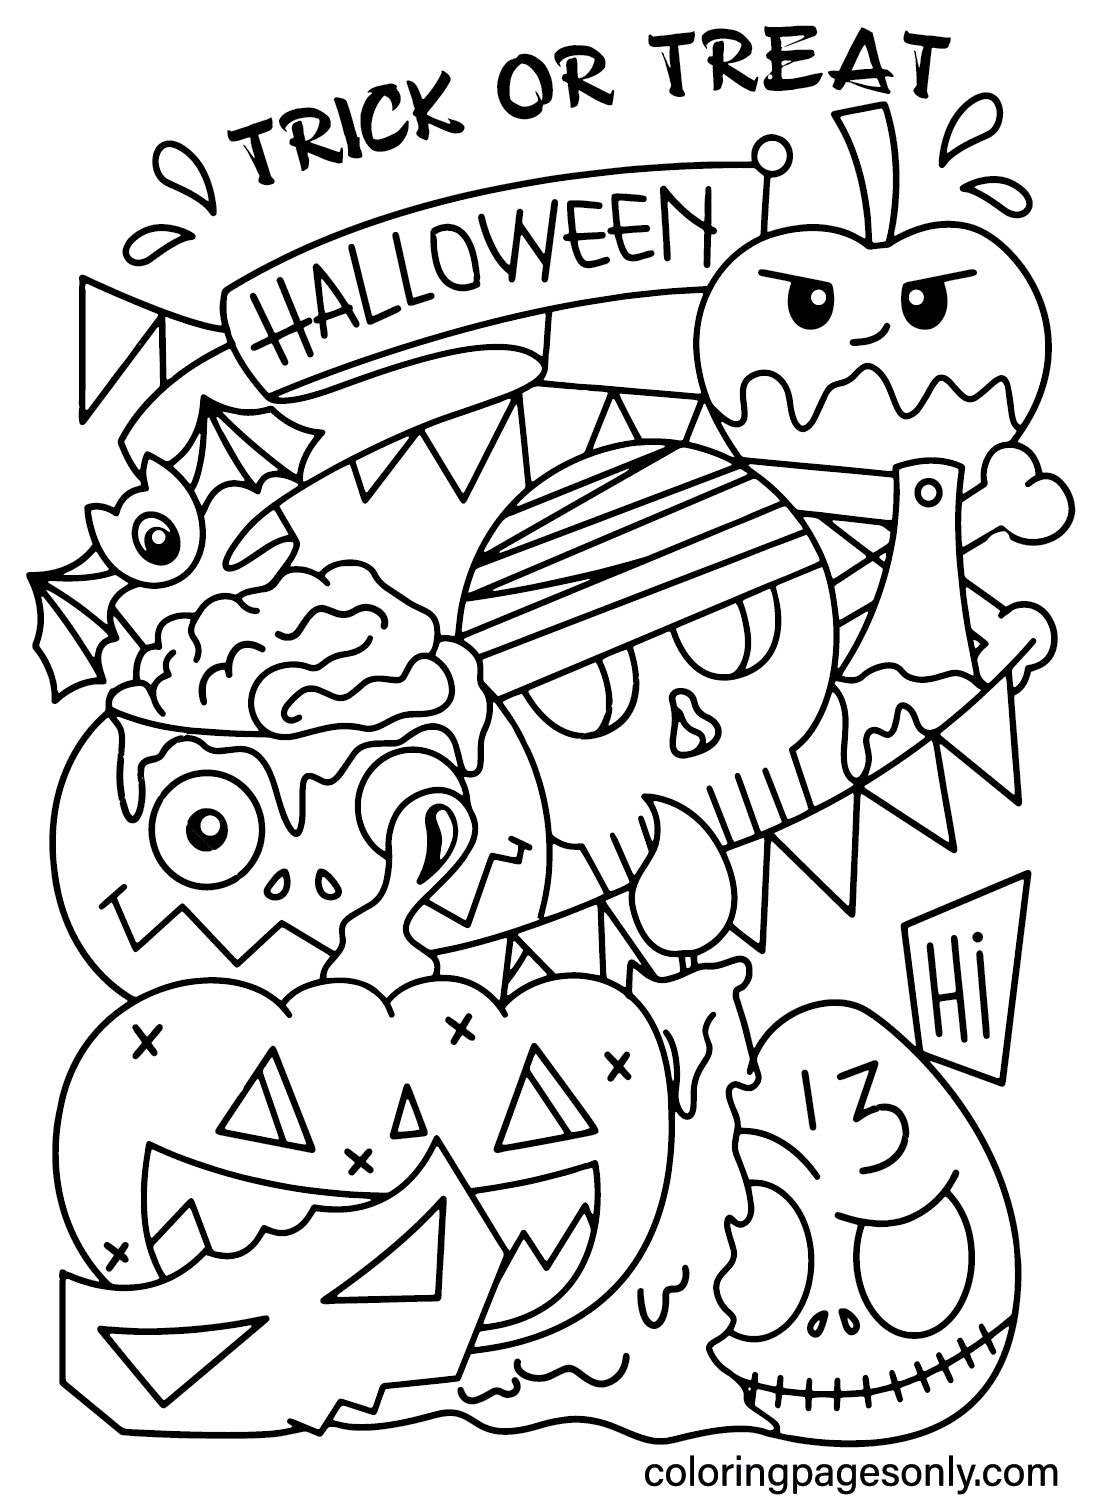 Afbeeldingen Trick or Treat kleurplaat van Spooktacular Halloween